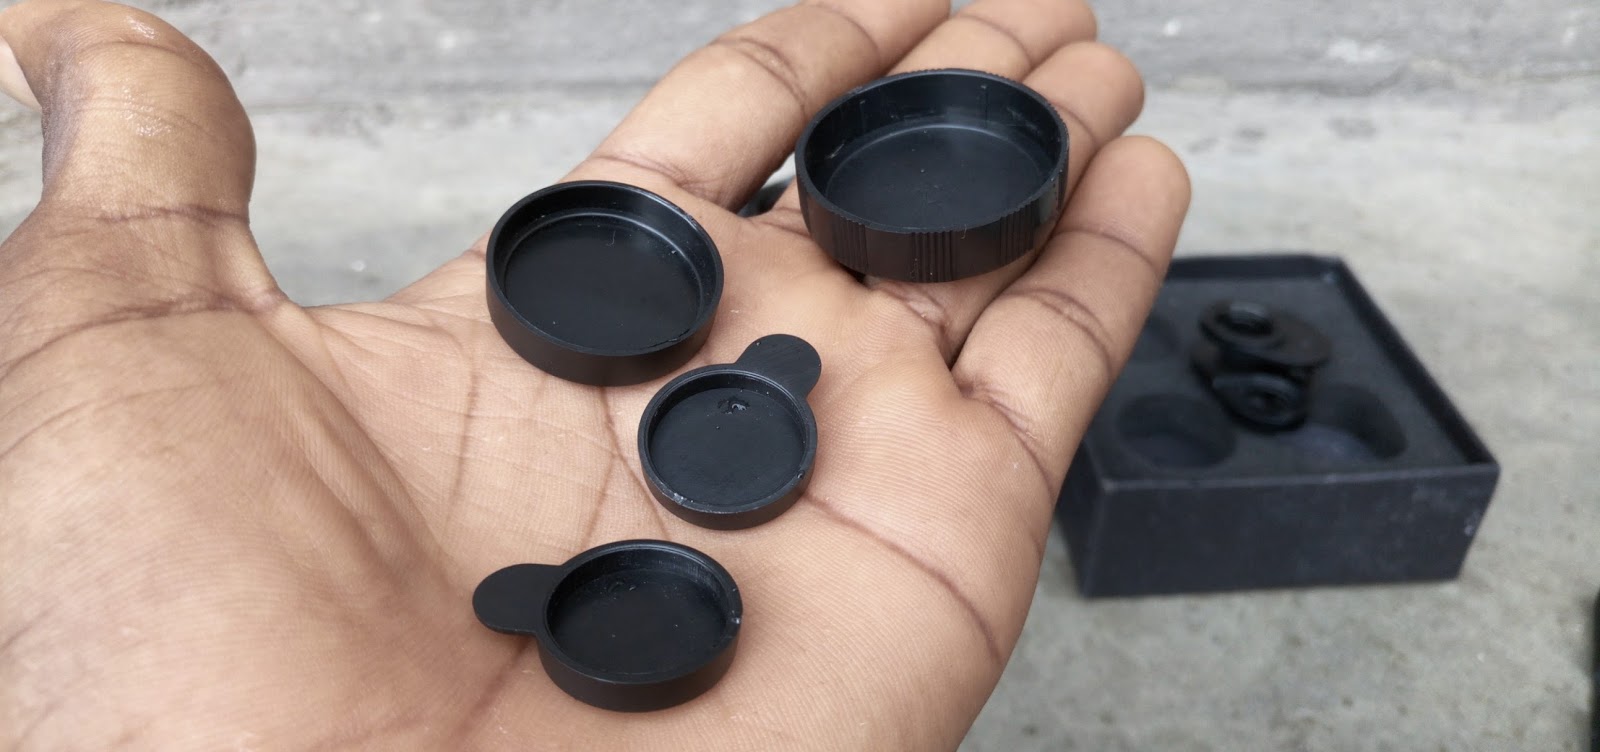 Lens caps